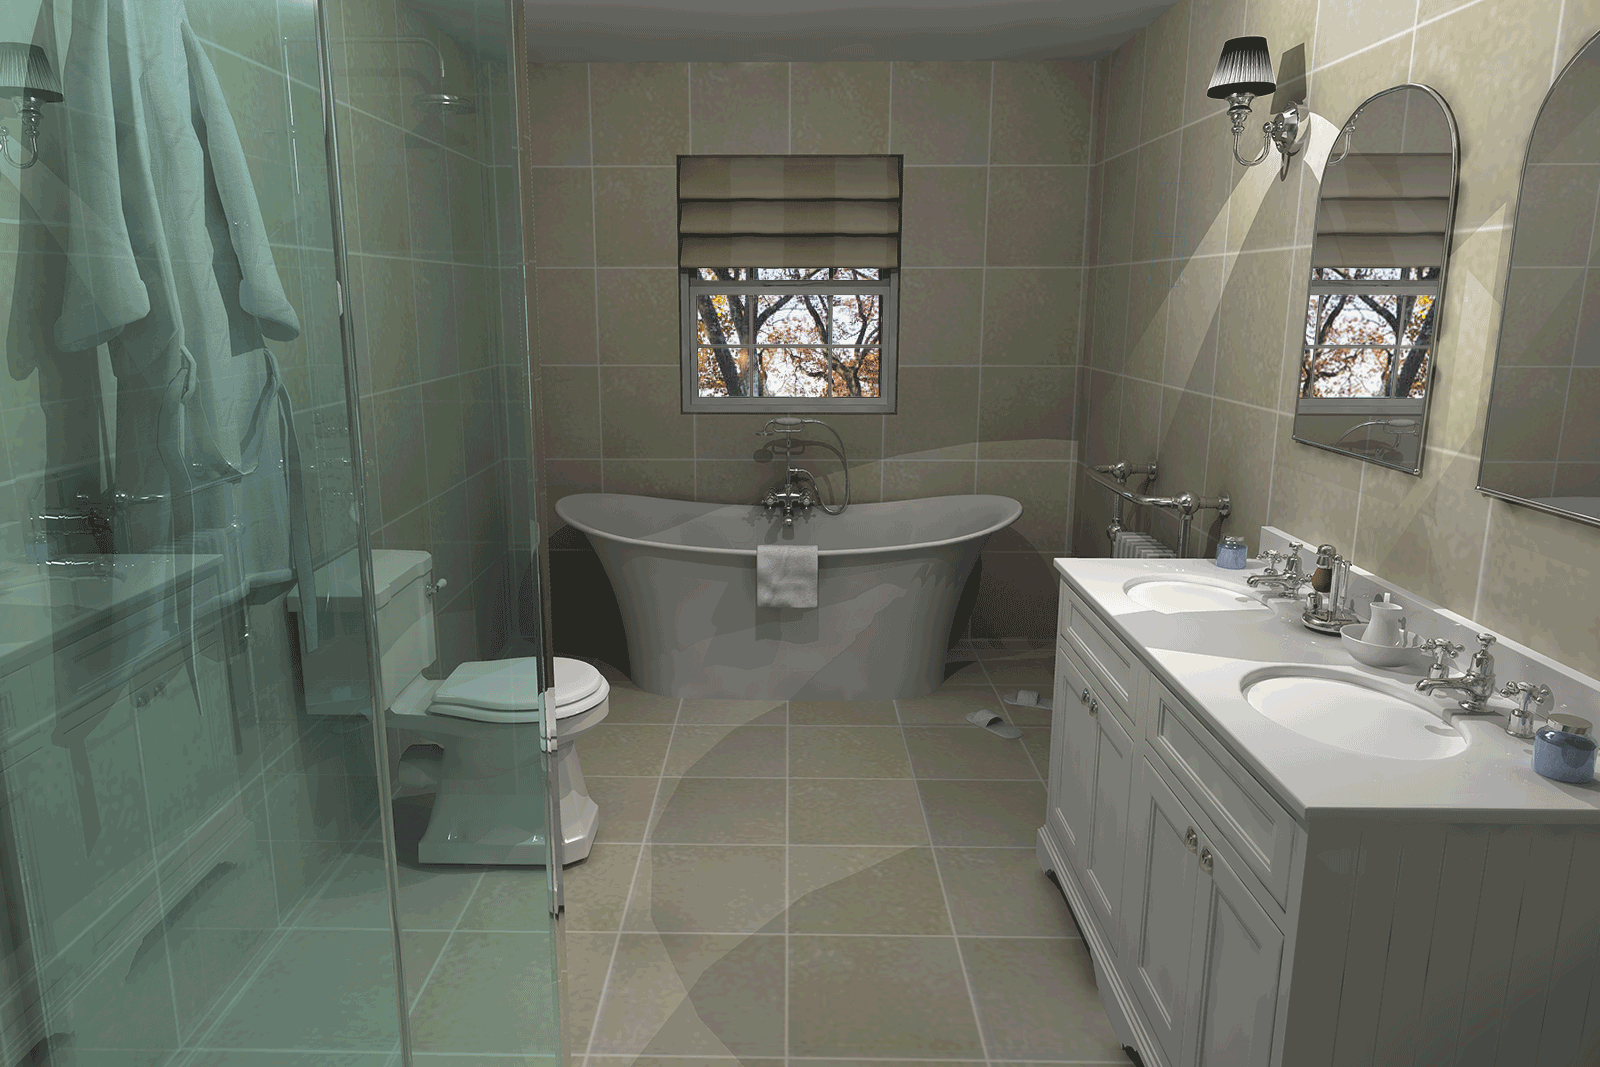 Upstairs bathroom design render